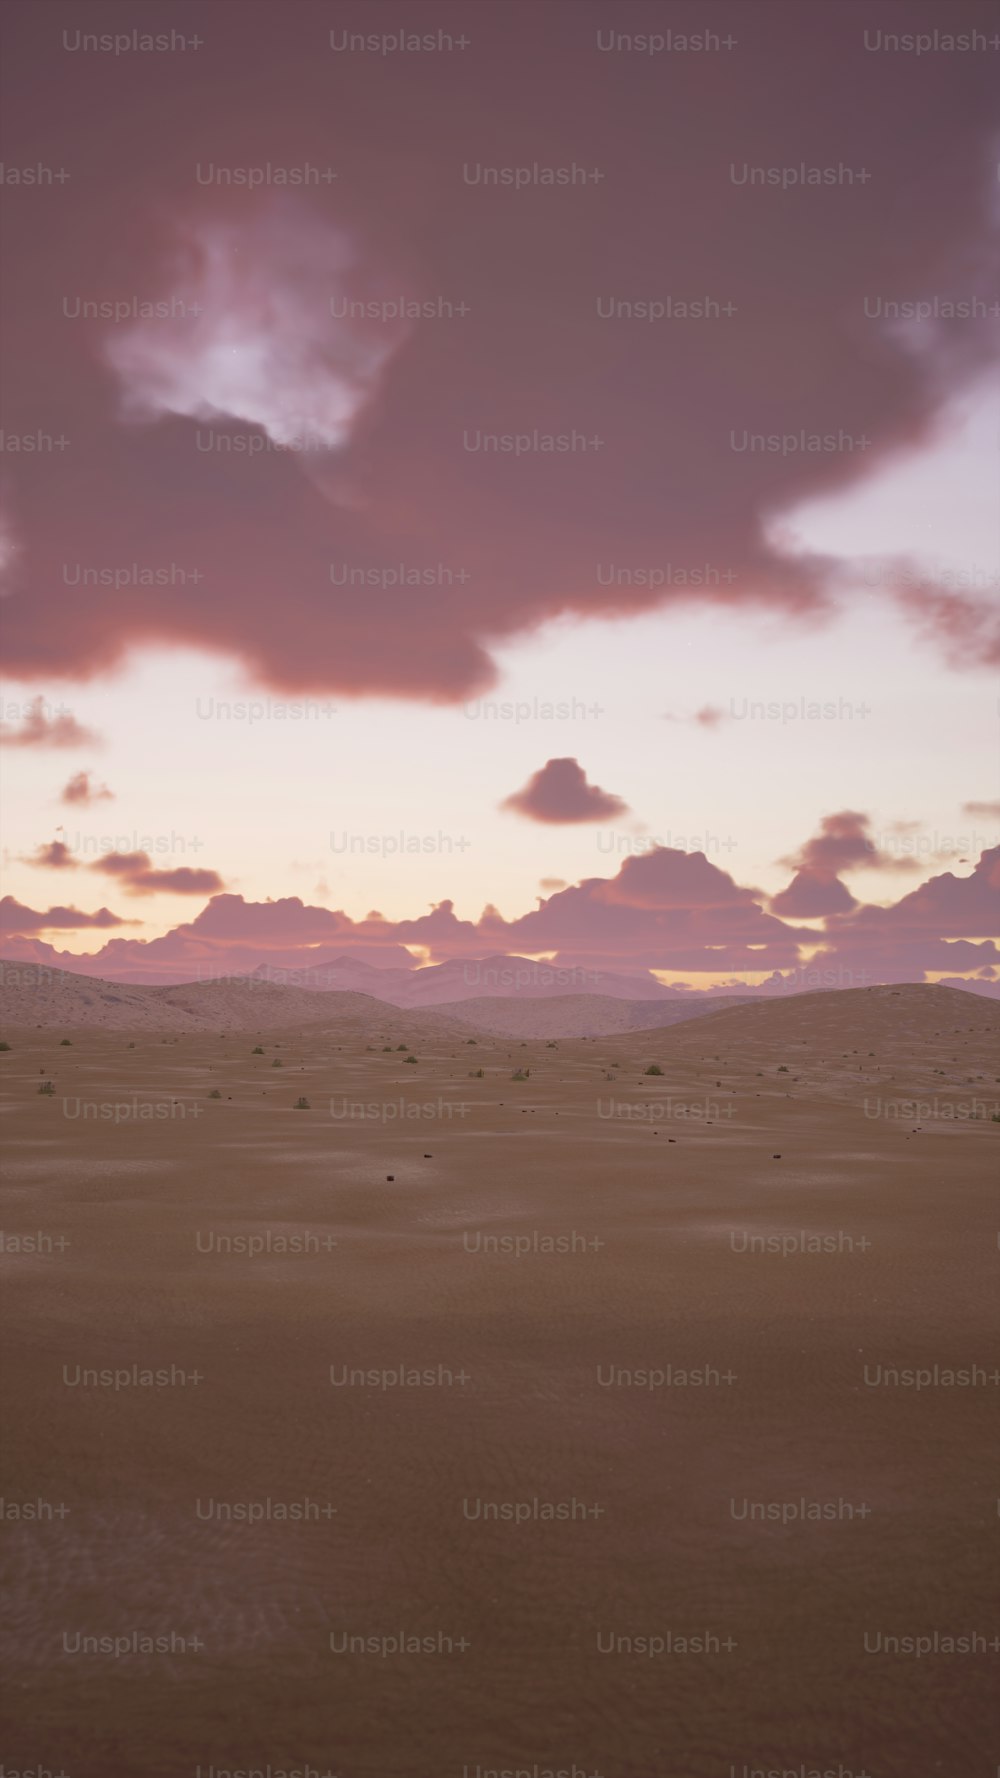 Un cheval solitaire debout au milieu d’un désert